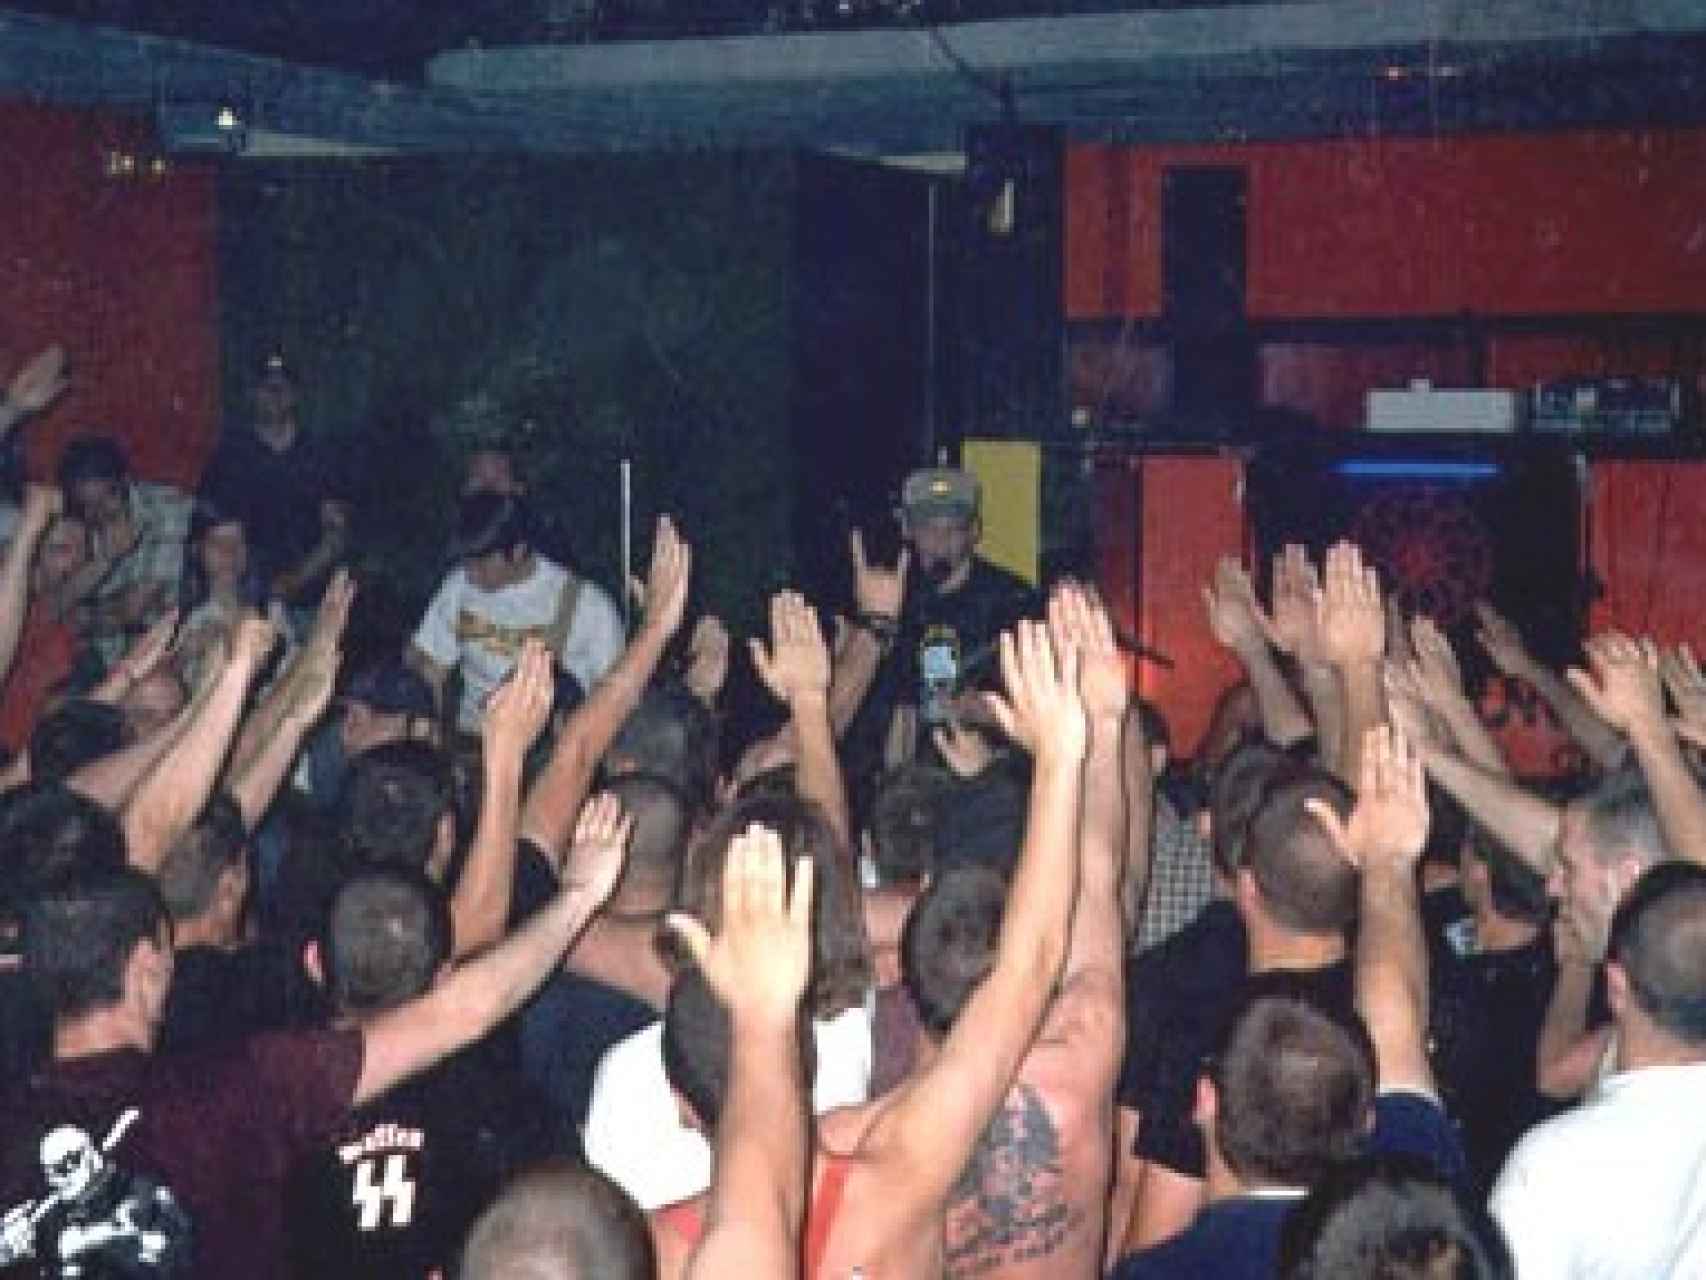 El grupo Batallón de Castigo de estilo  RAC, una corriente musical neonazi, en un concierto en Alcalá de Henares en 2003.